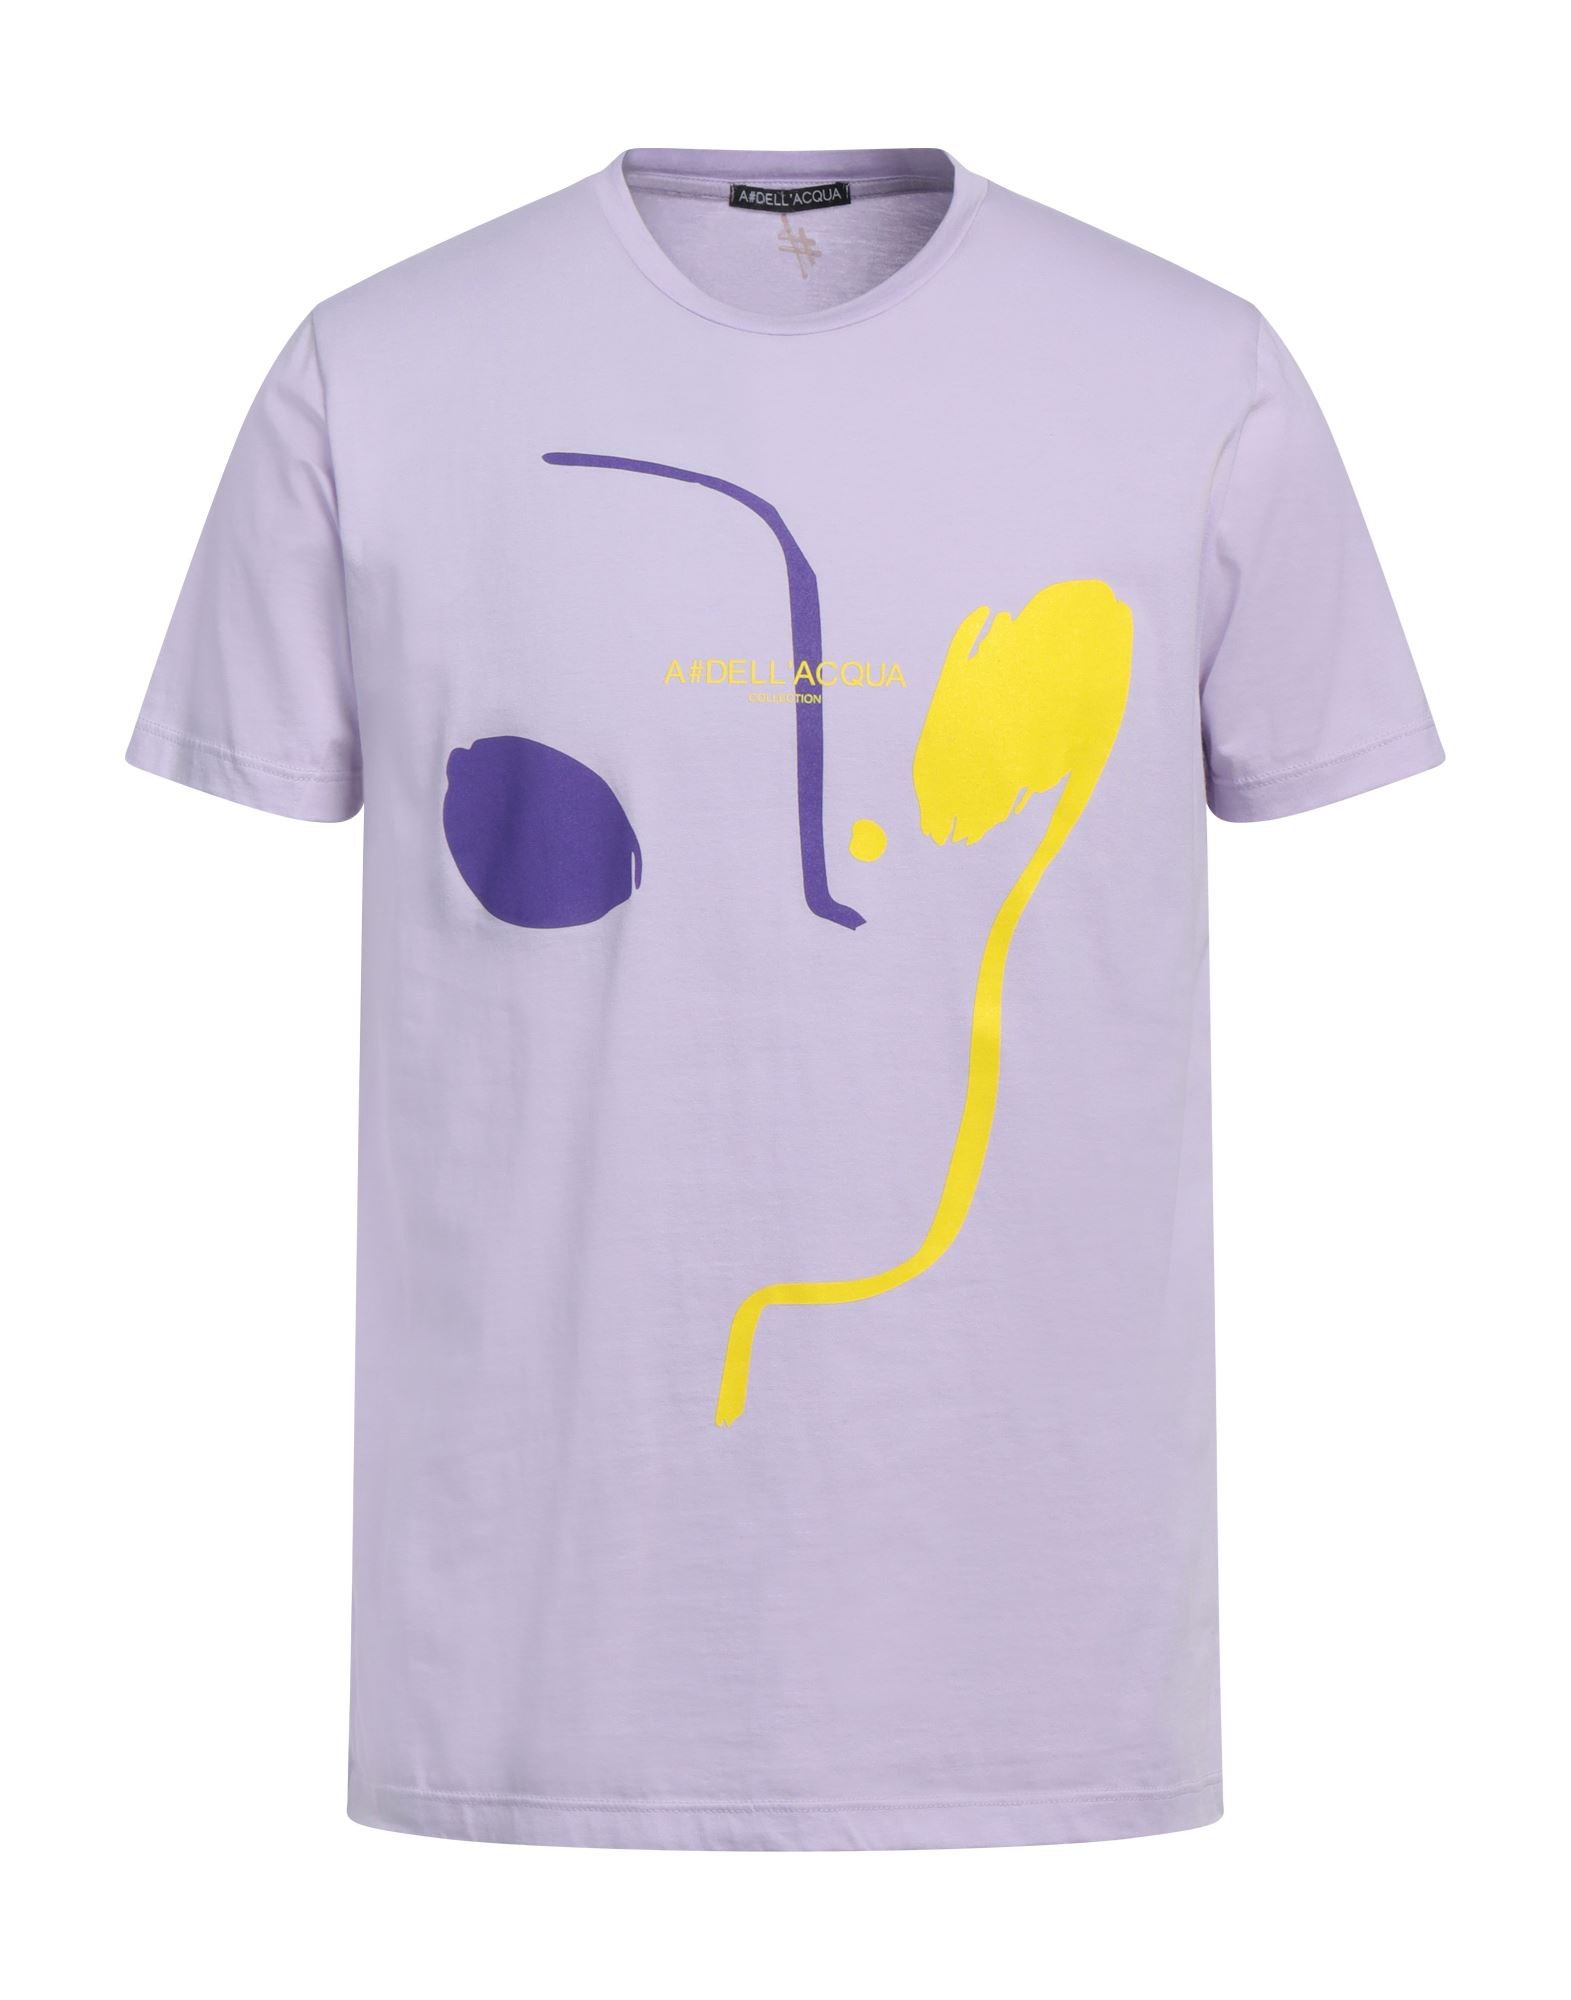 Alessandro Dell'acqua T-shirts In Purple